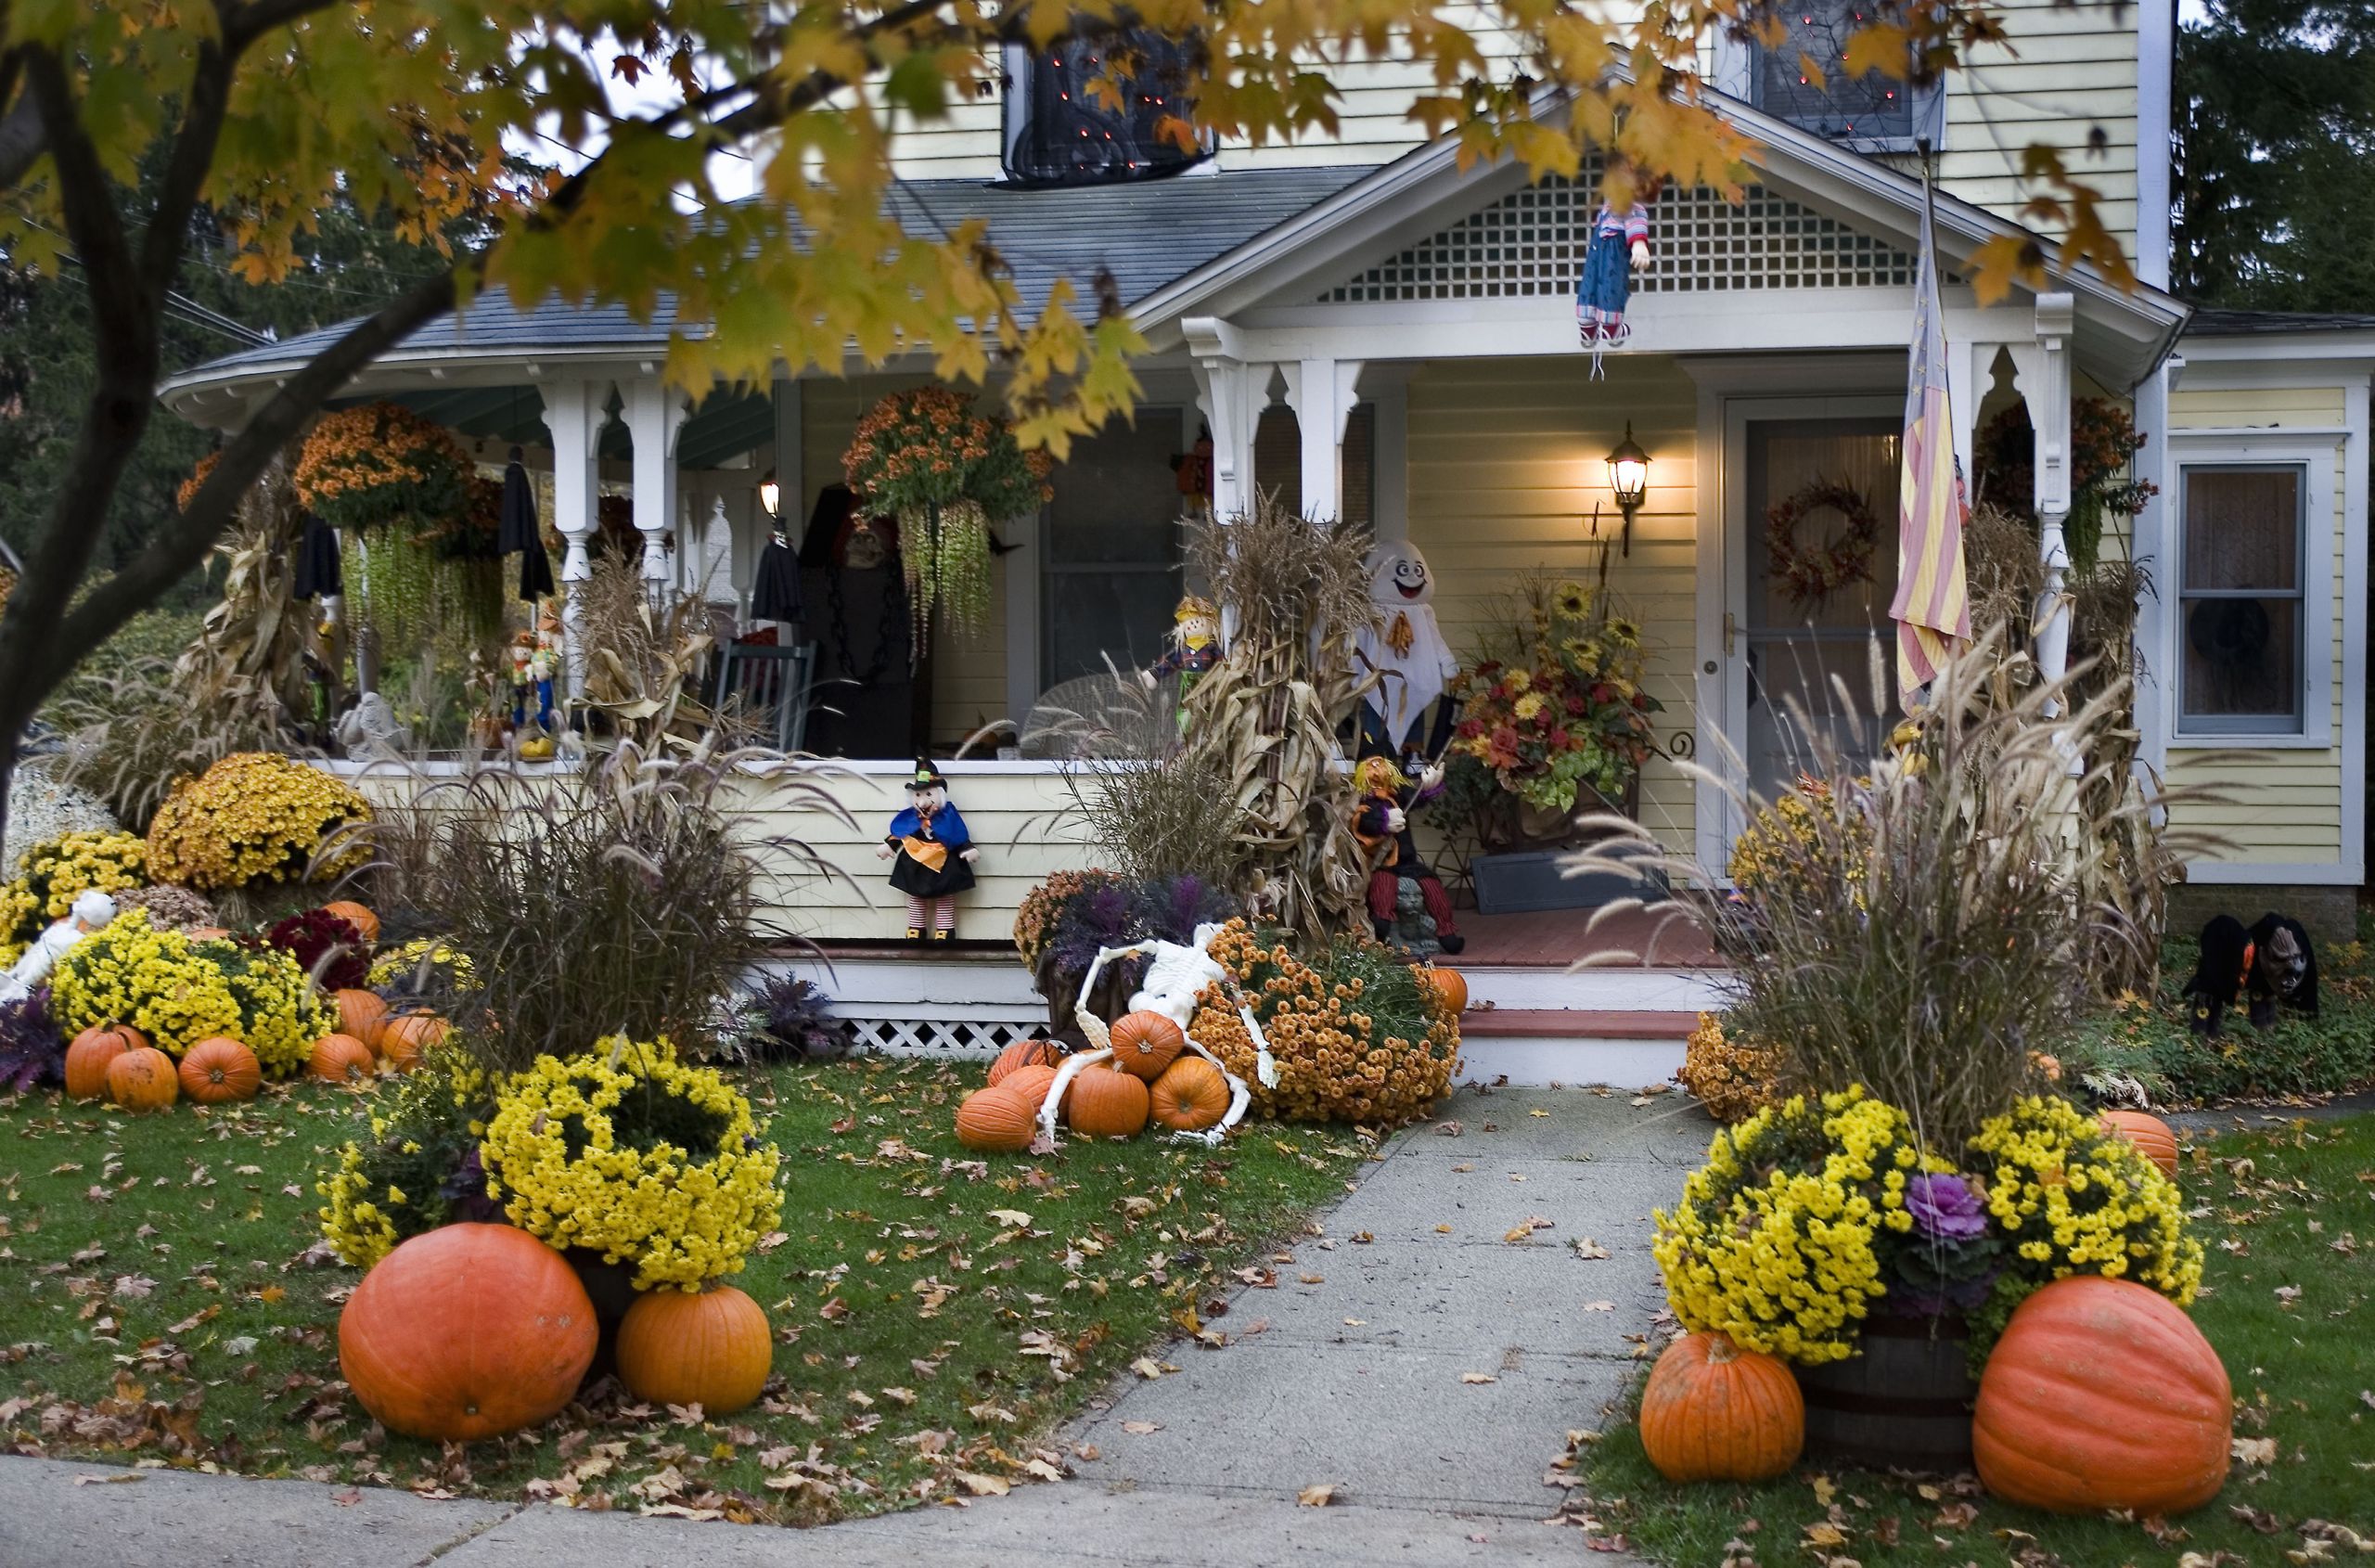 Backyard Halloween Decorations
 10 Best Outdoor Halloween Decorations Porch Decor Ideas